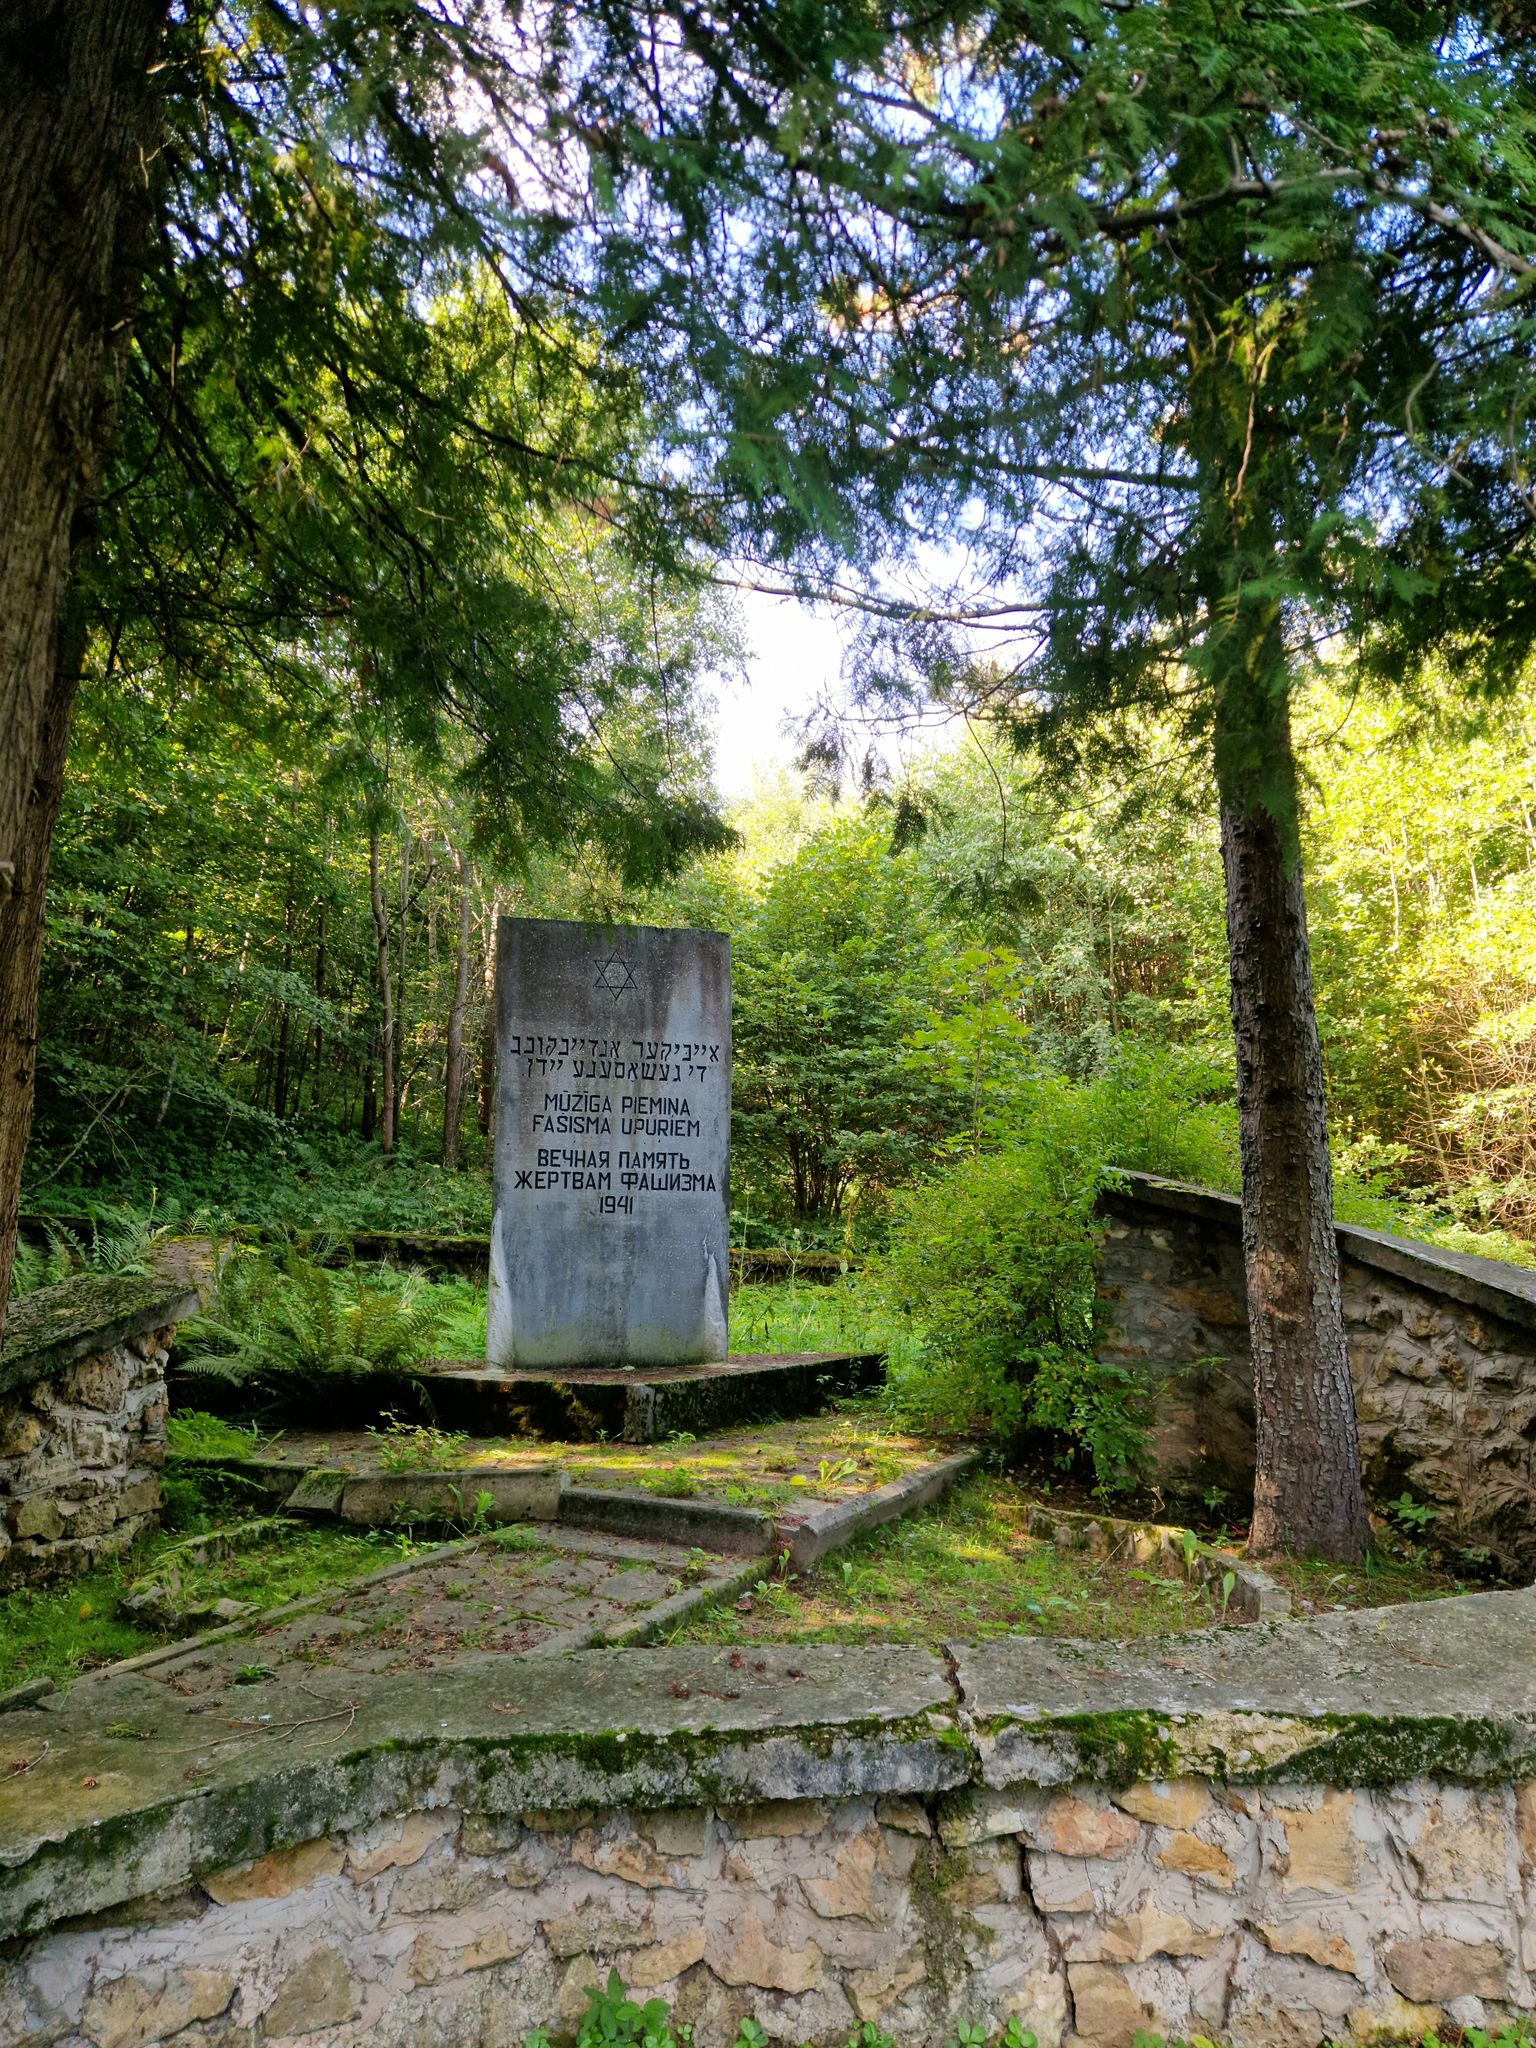 Piemiņas vieta Krāslavā, netālu no Karņicka kalna. Netālu no tās atrodas ebreju nošaušanas vieta Otrā pasaules kara periodā.